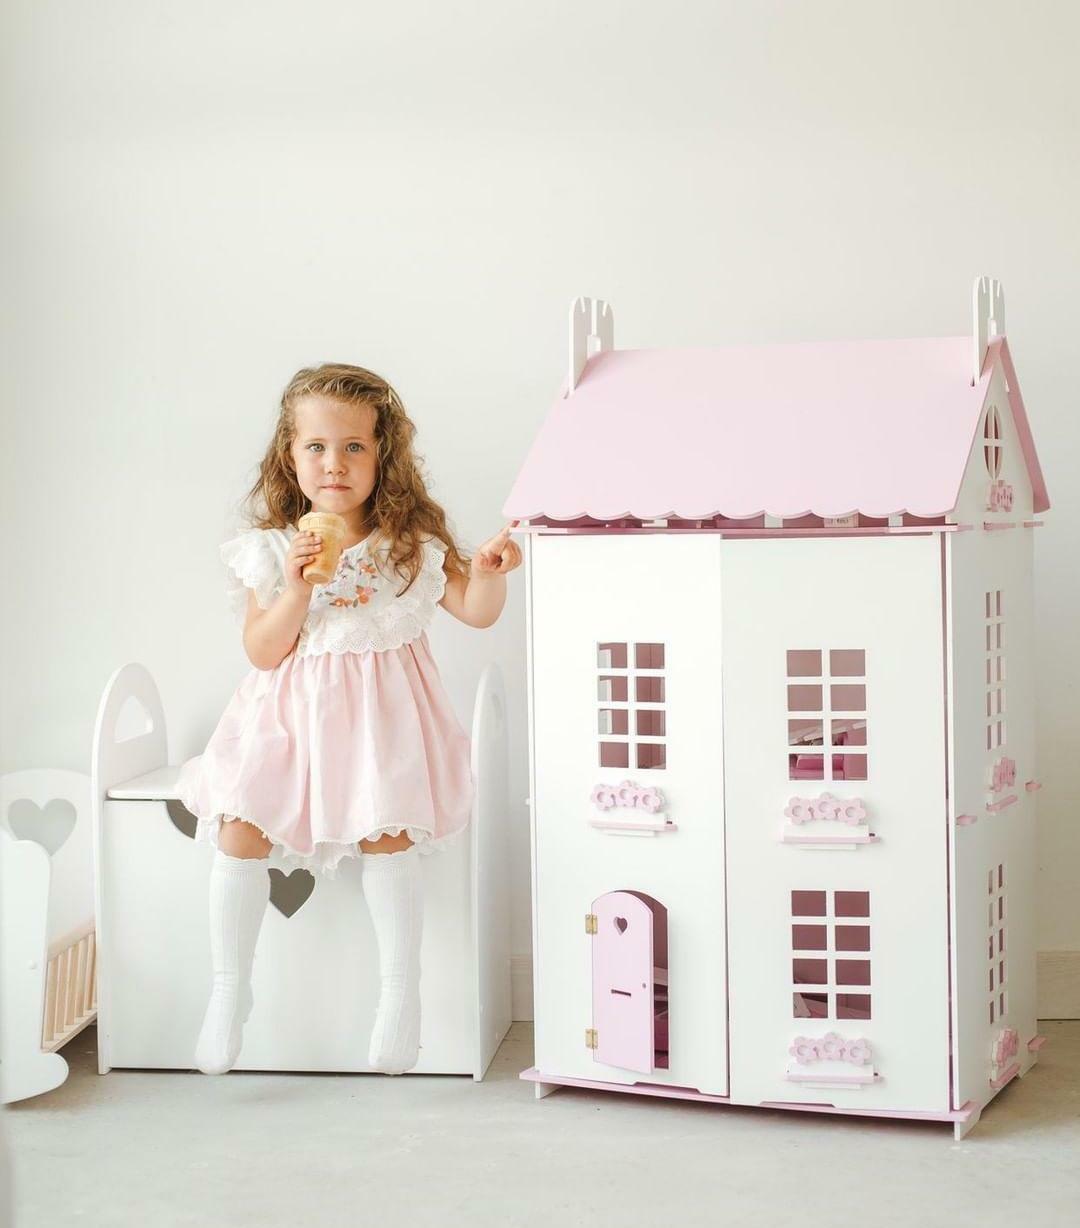 Делаем кукольный домик из коробки своими руками: инструкция по созданию необычного декора